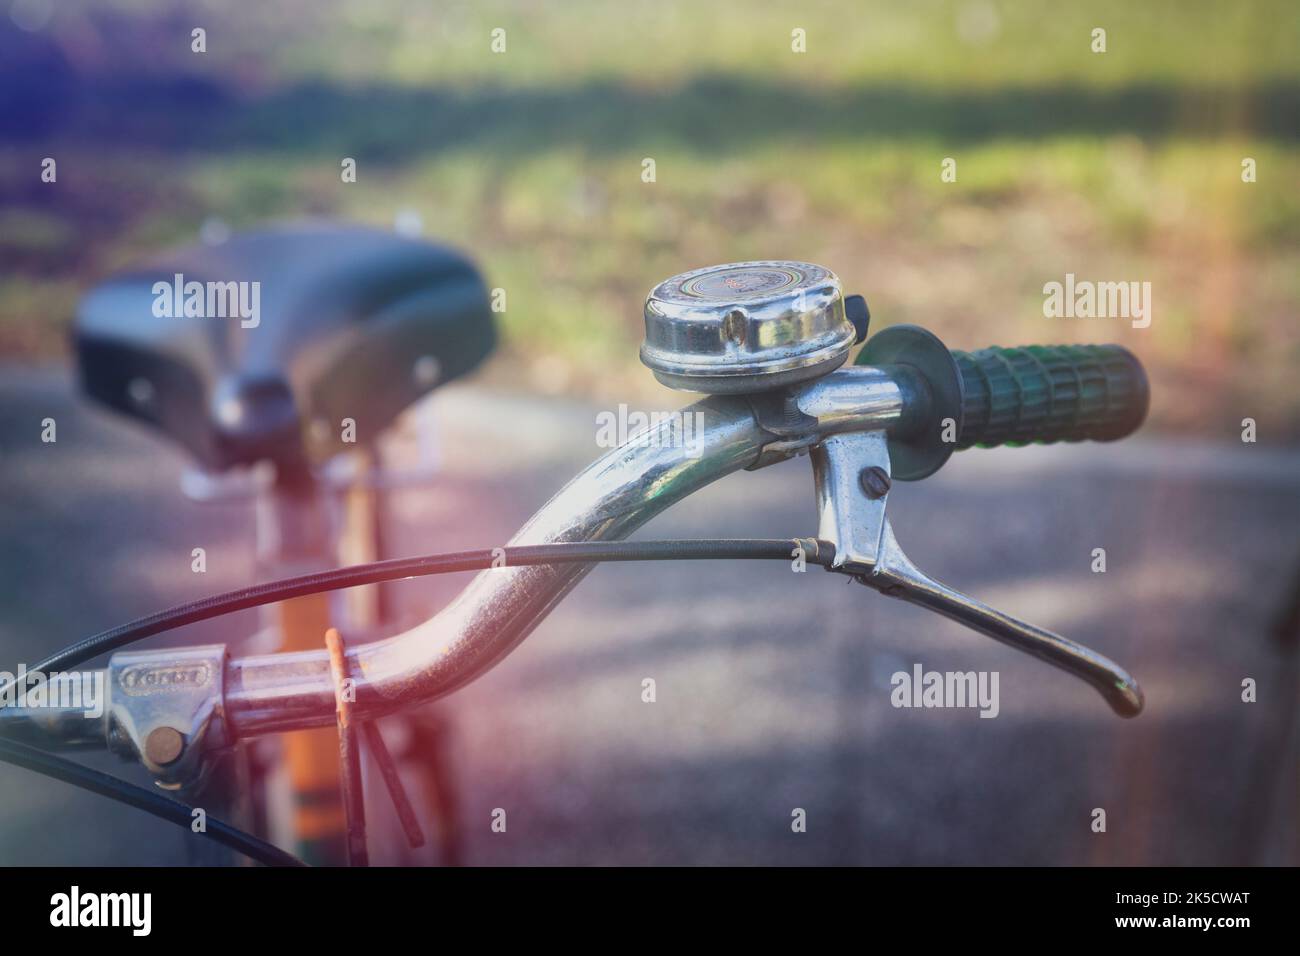 Italia, Véneto, Padua. Bicicleta urbana, detalles del manillar con campana, empuñadura y palanca de freno Foto de stock